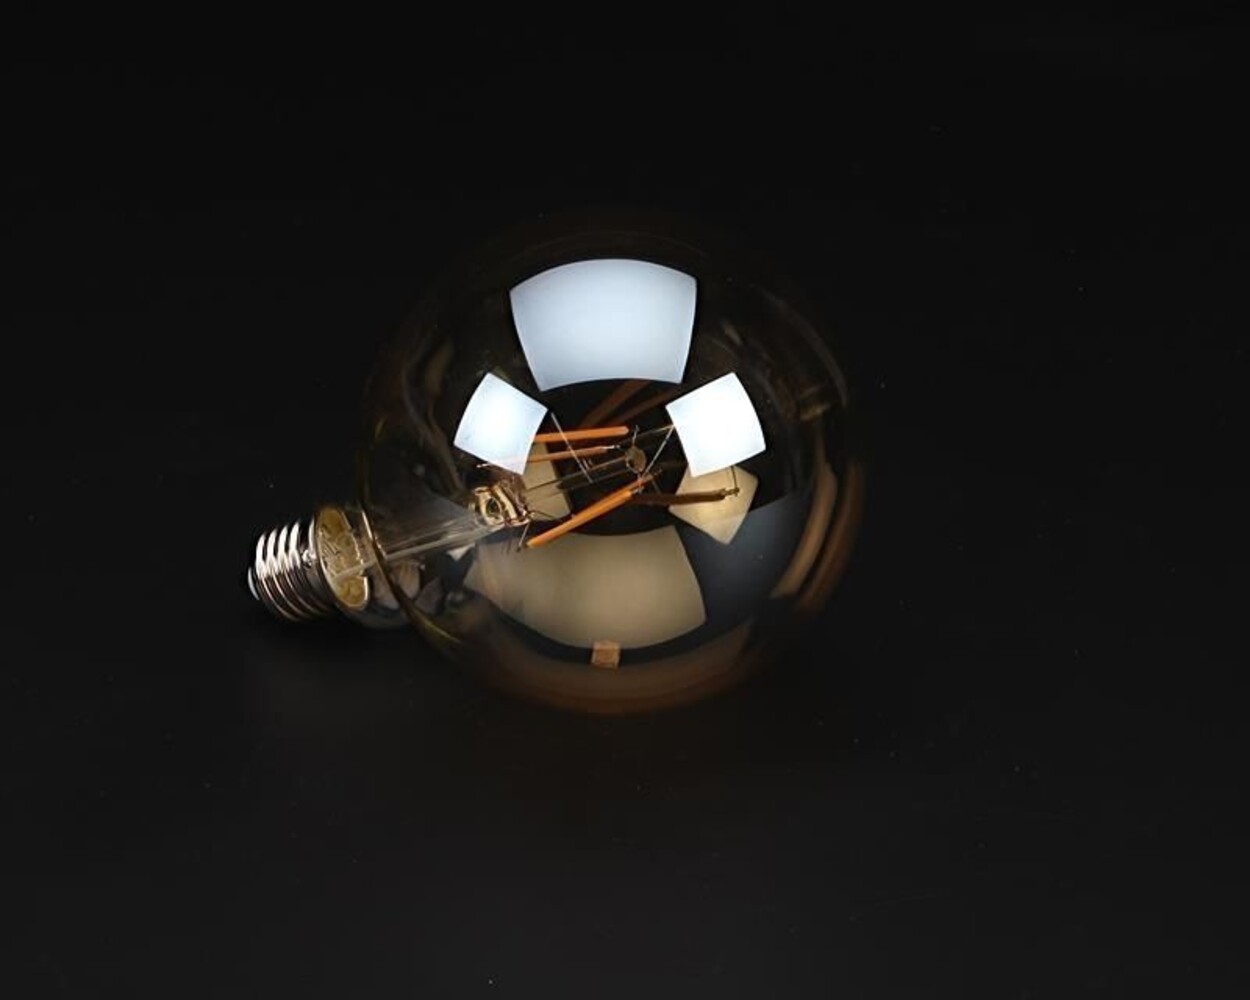 Hochwertiges Filament Leuchtmittel von der Marke Deko-Light mit der Lichtfarbe 2200K, passend für E27 Fassungen